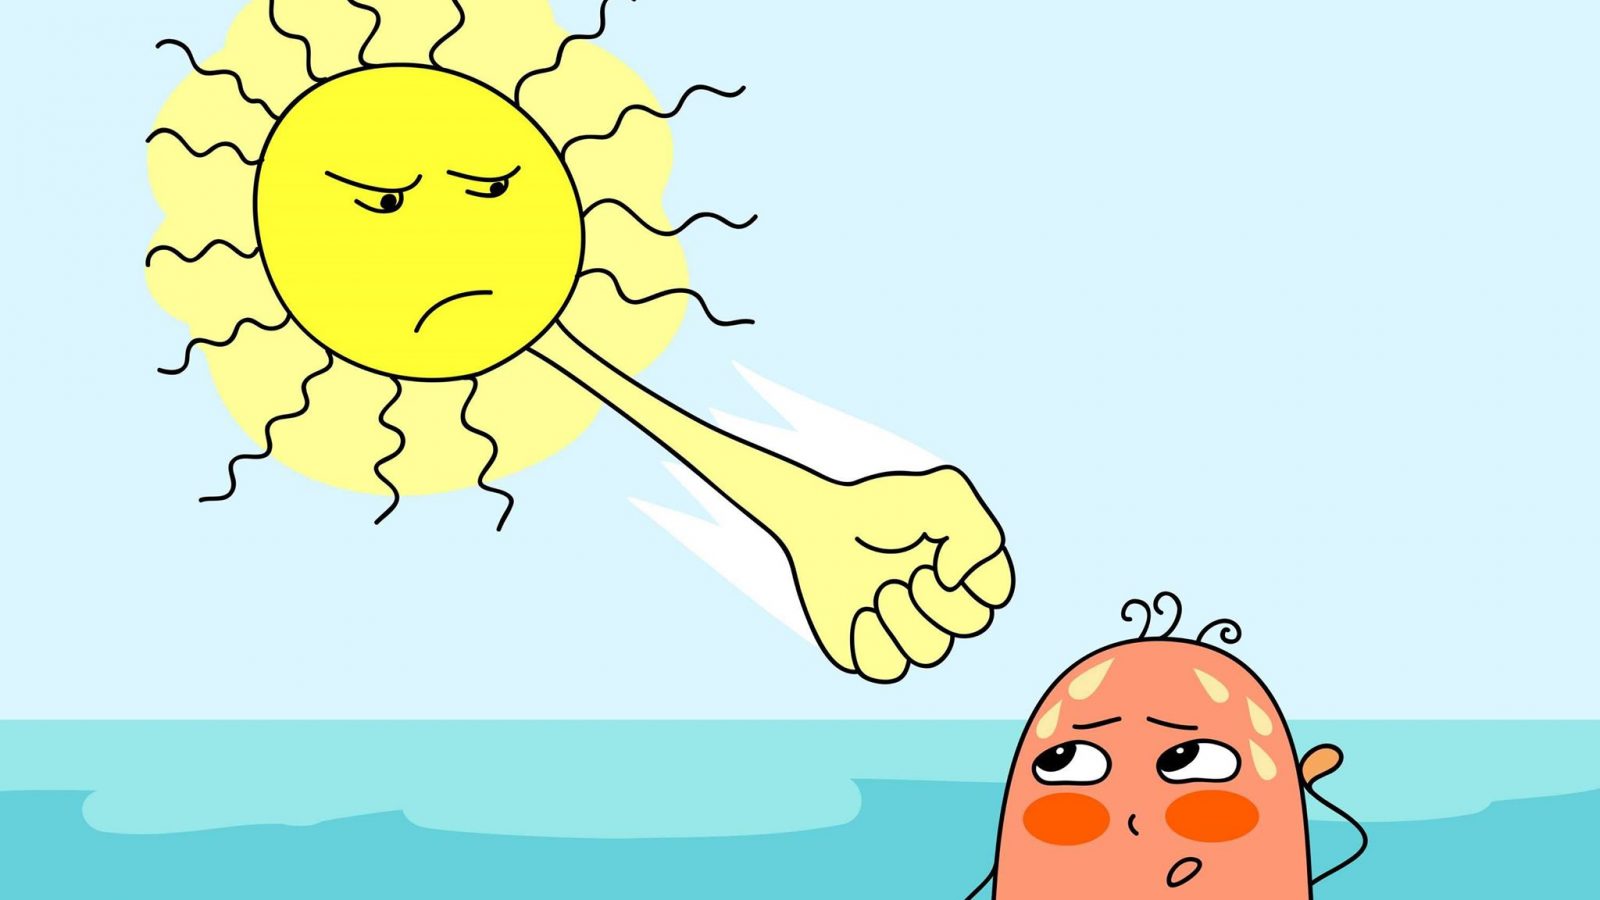 لتفادي ضربة الشمس: تحذير من السباحة في هذه الأوقات ..وتفادي شرب هذه المواد